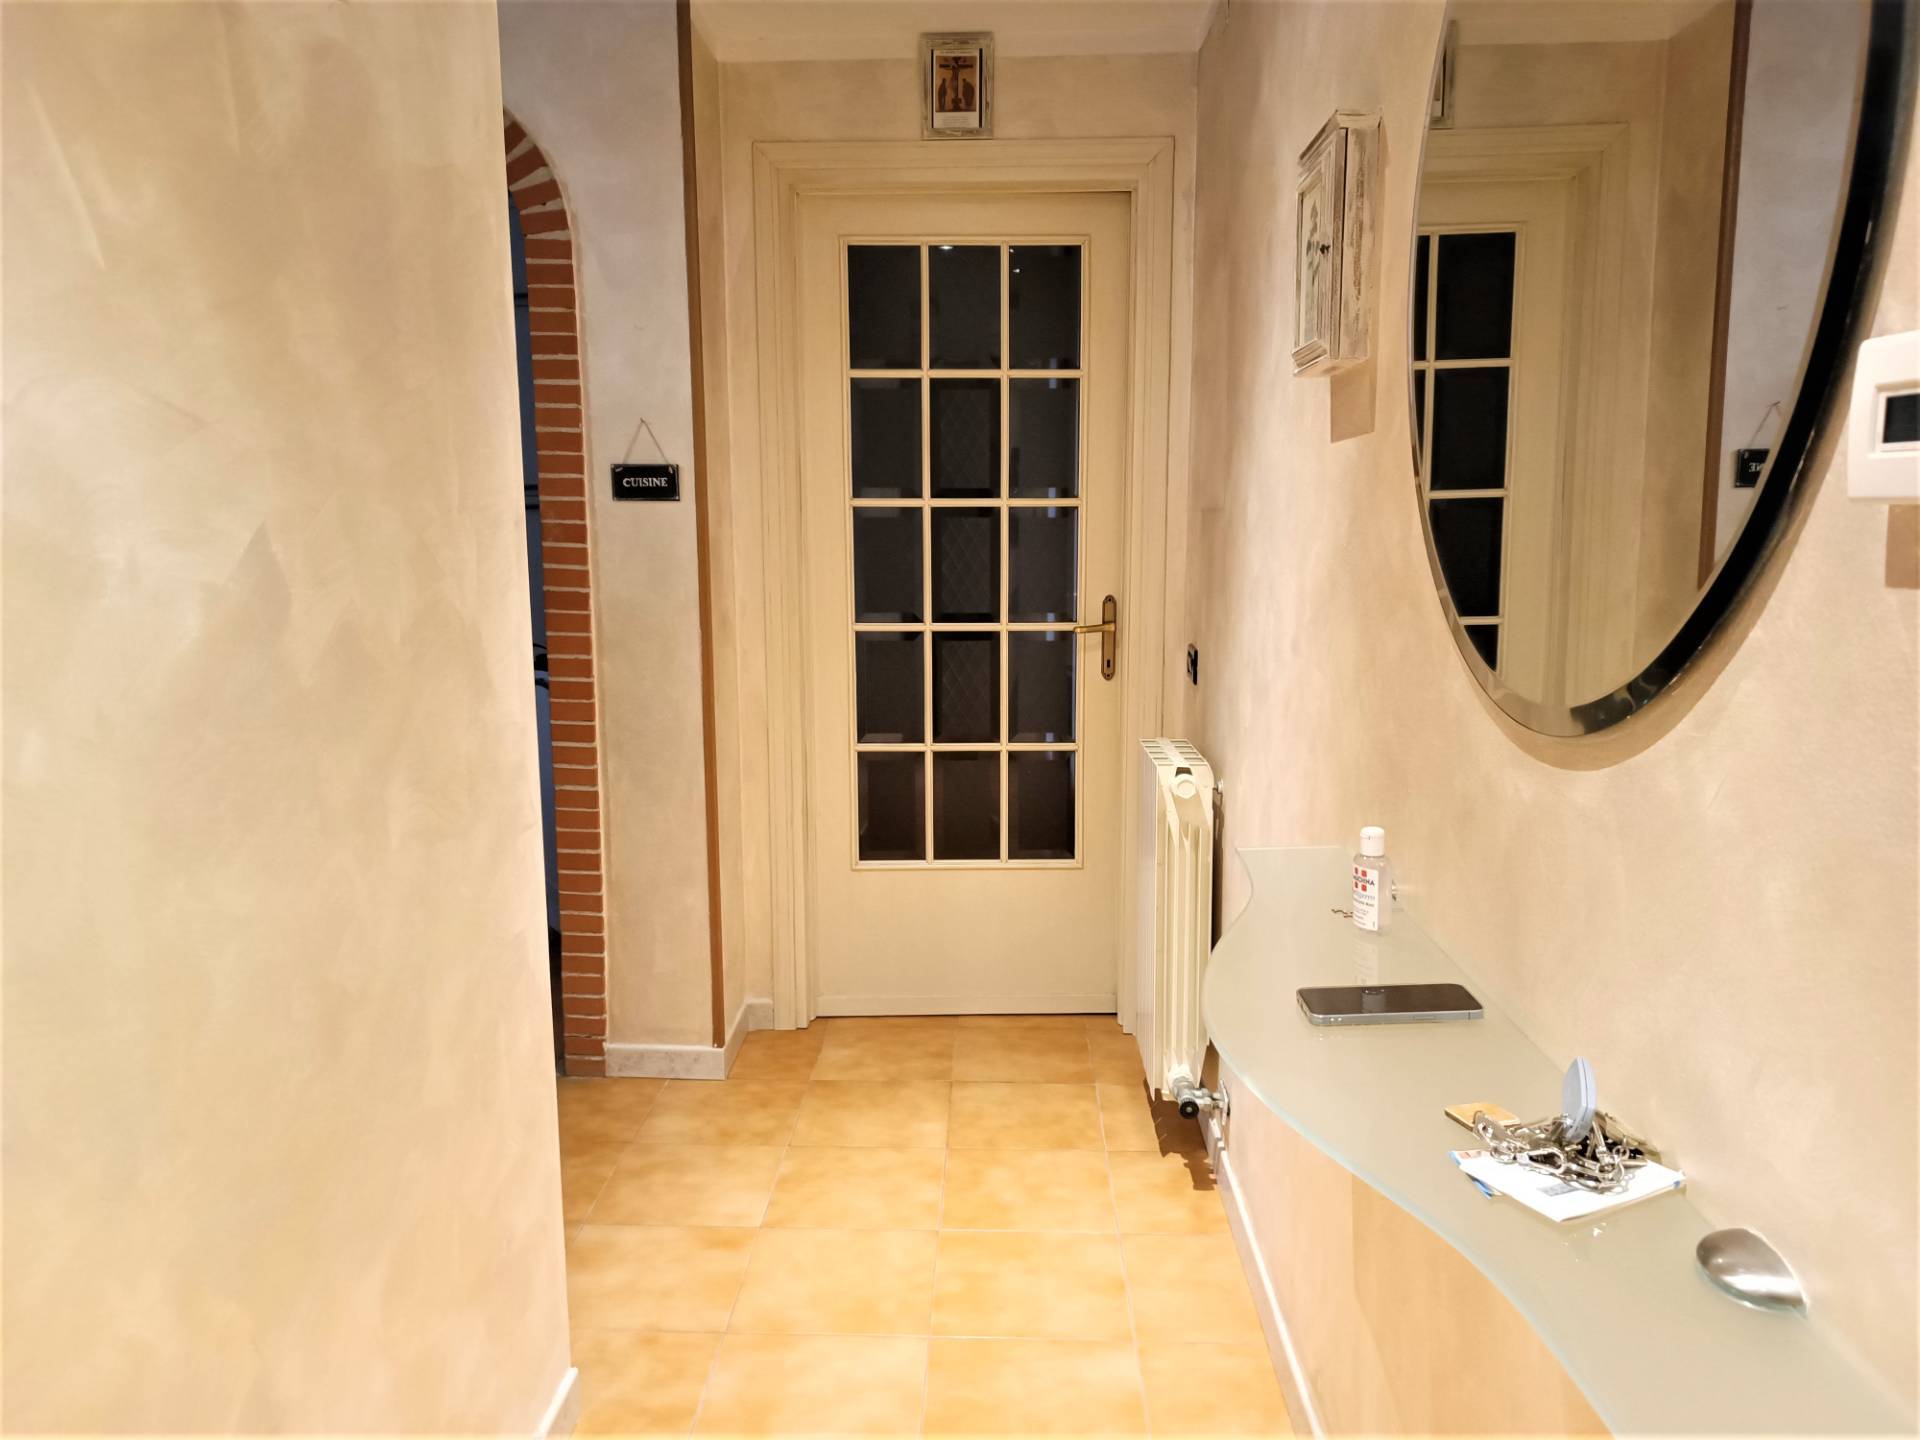 Appartamento in vendita a Casciana Terme Lari, 5 locali, prezzo € 150.000 | PortaleAgenzieImmobiliari.it